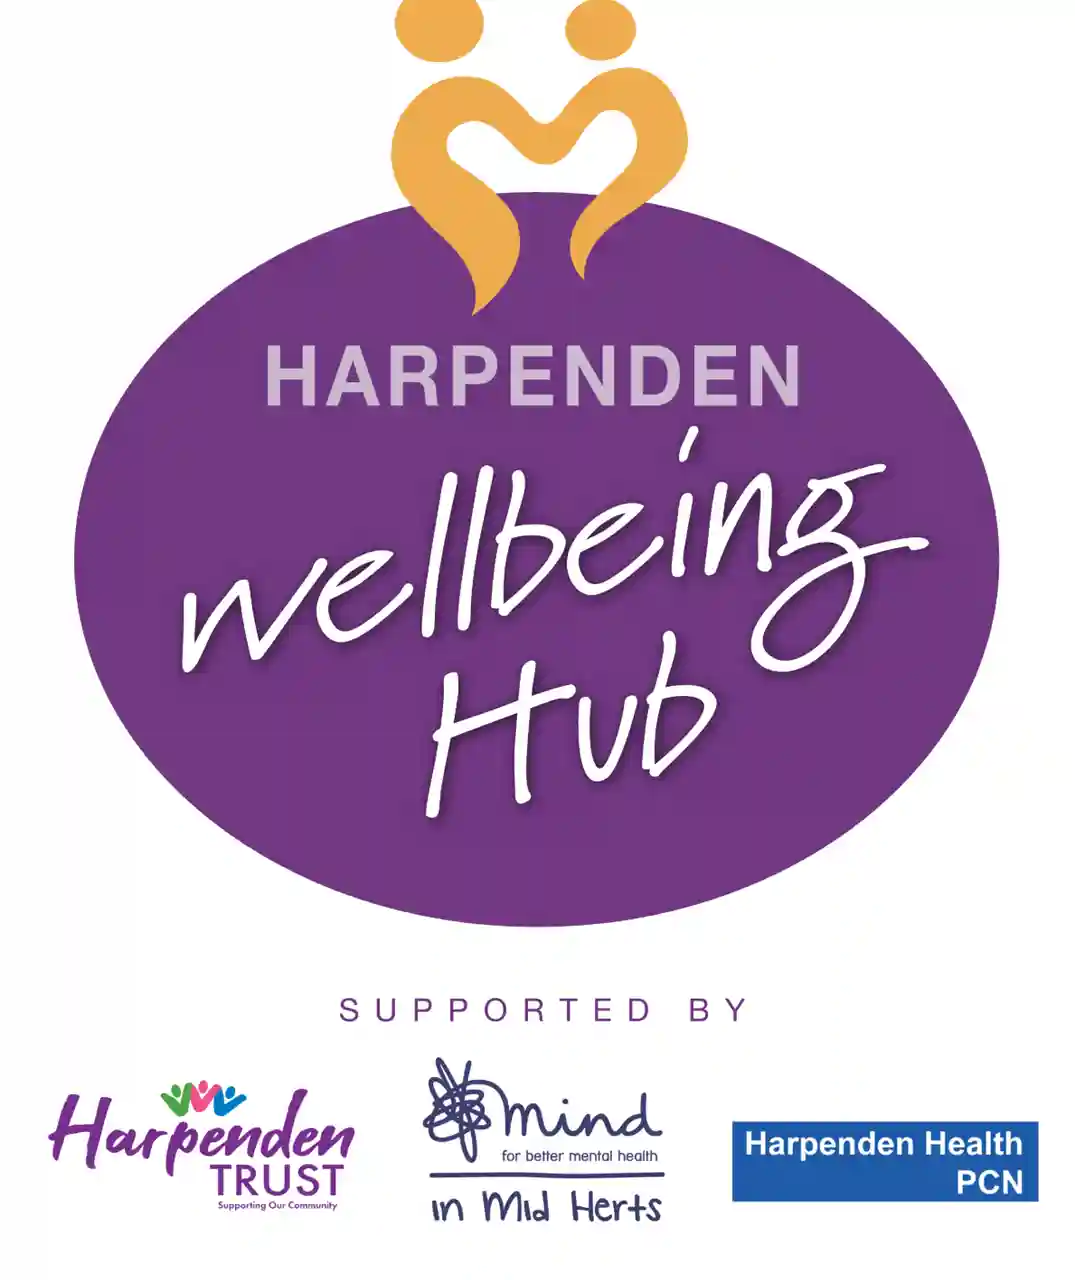 wellbeing hub logo